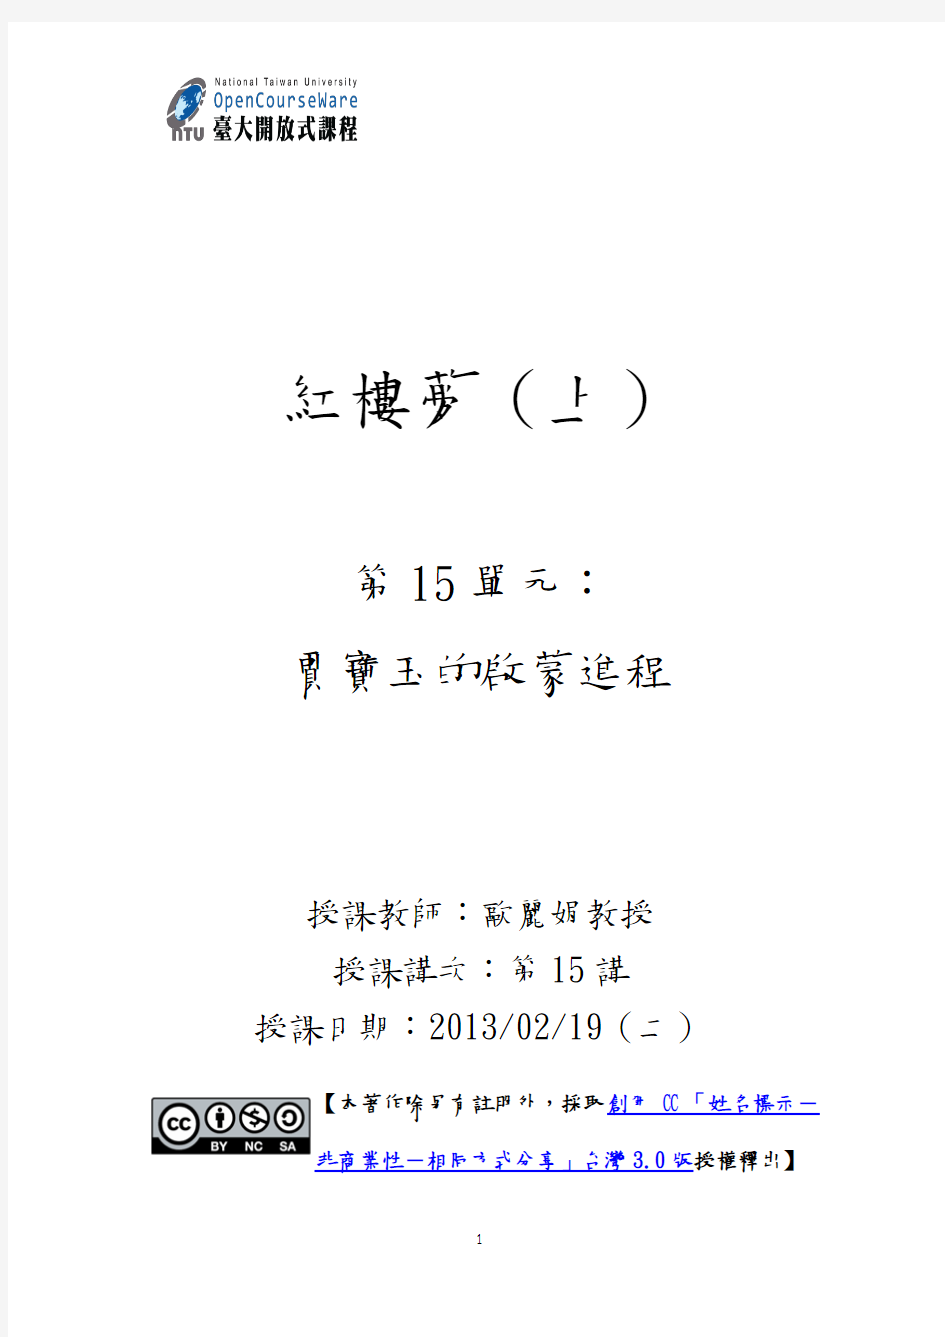 台湾大学公开课红楼梦的课件101S120_AA15L01